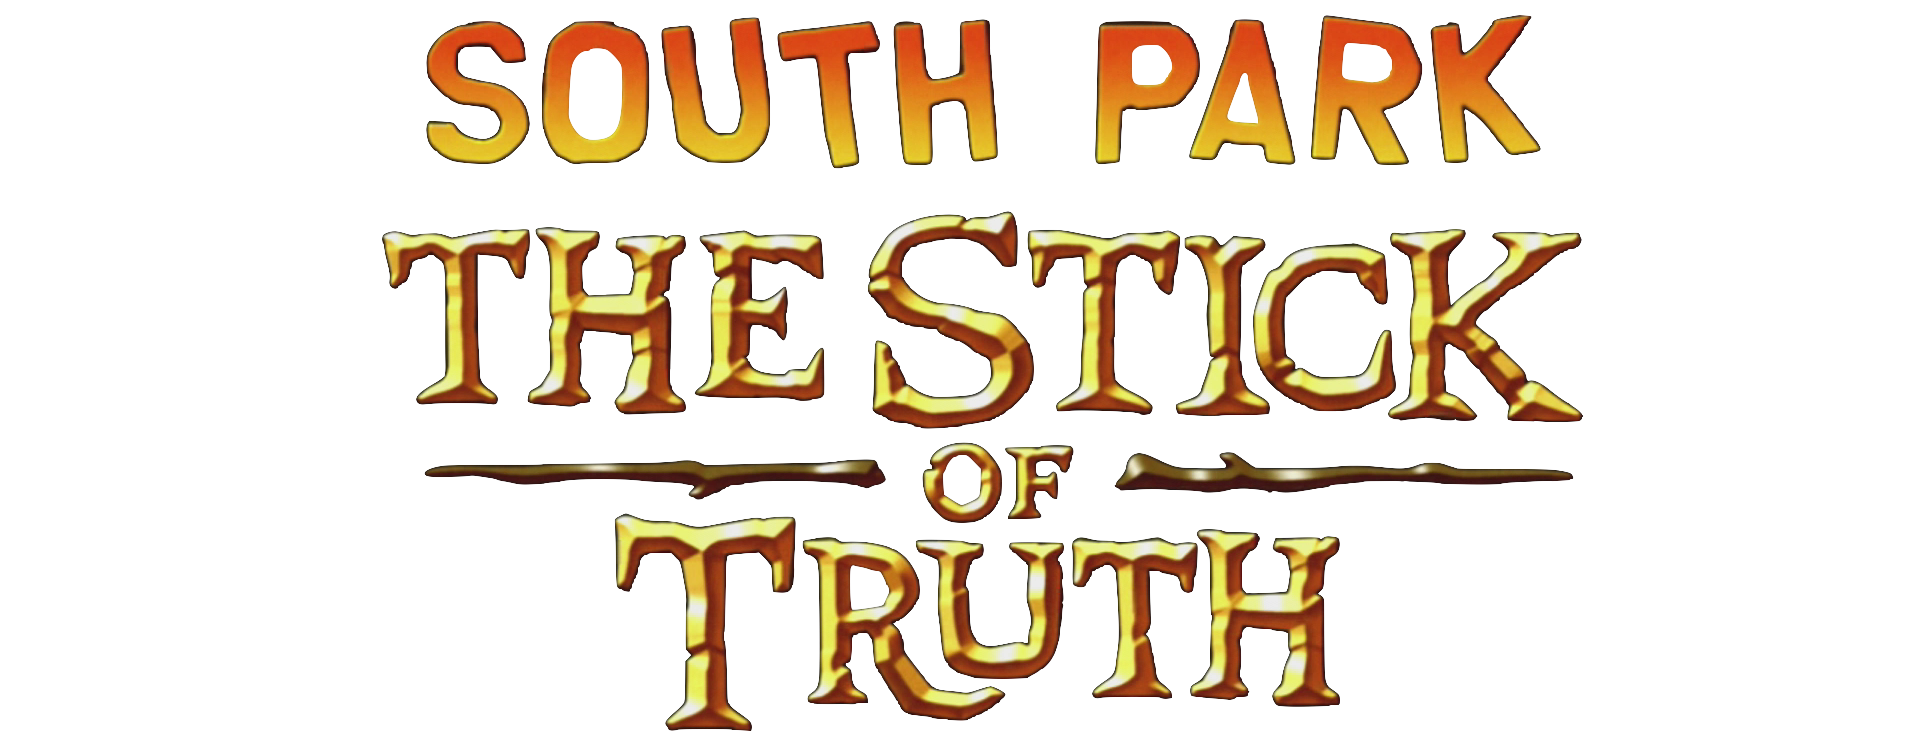 South park the stick of truth скрытые достижения в стим фото 101